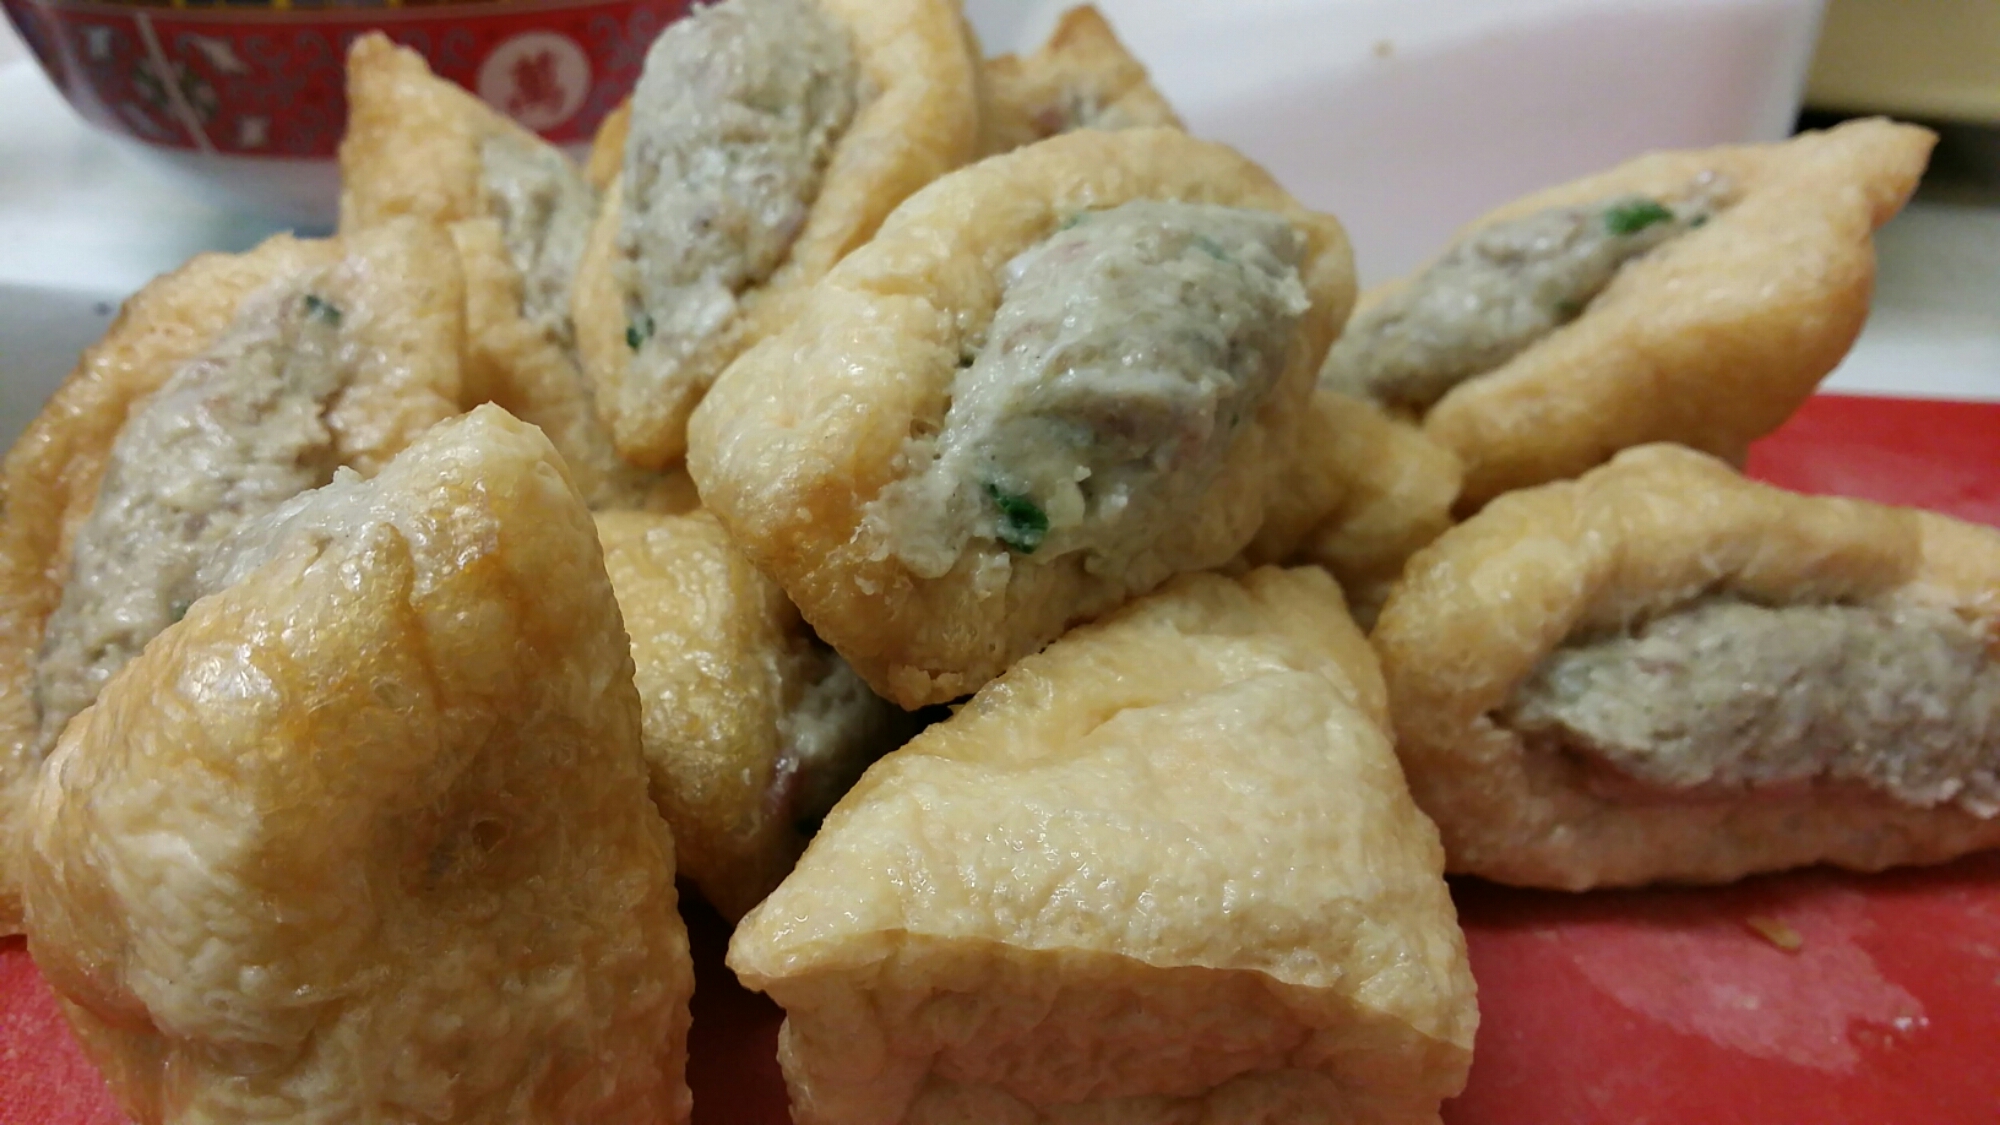 Resep Masakan Tahu Bakso Crispy, Yummy...!! - Jatik.com